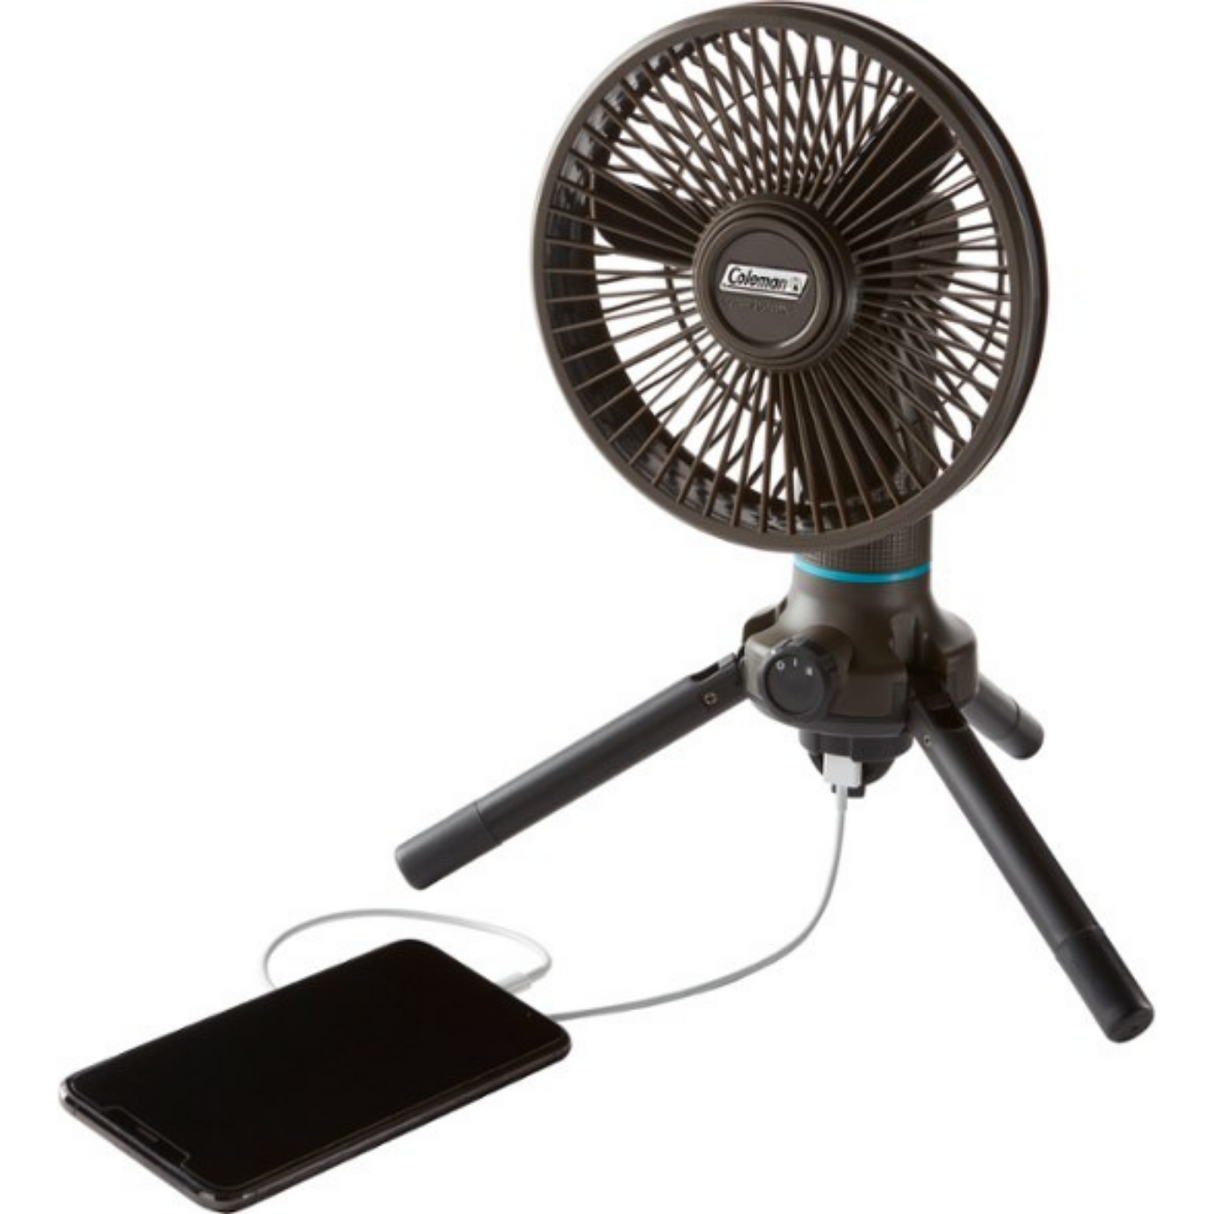 OneSource Multi-Speed Portable Fan